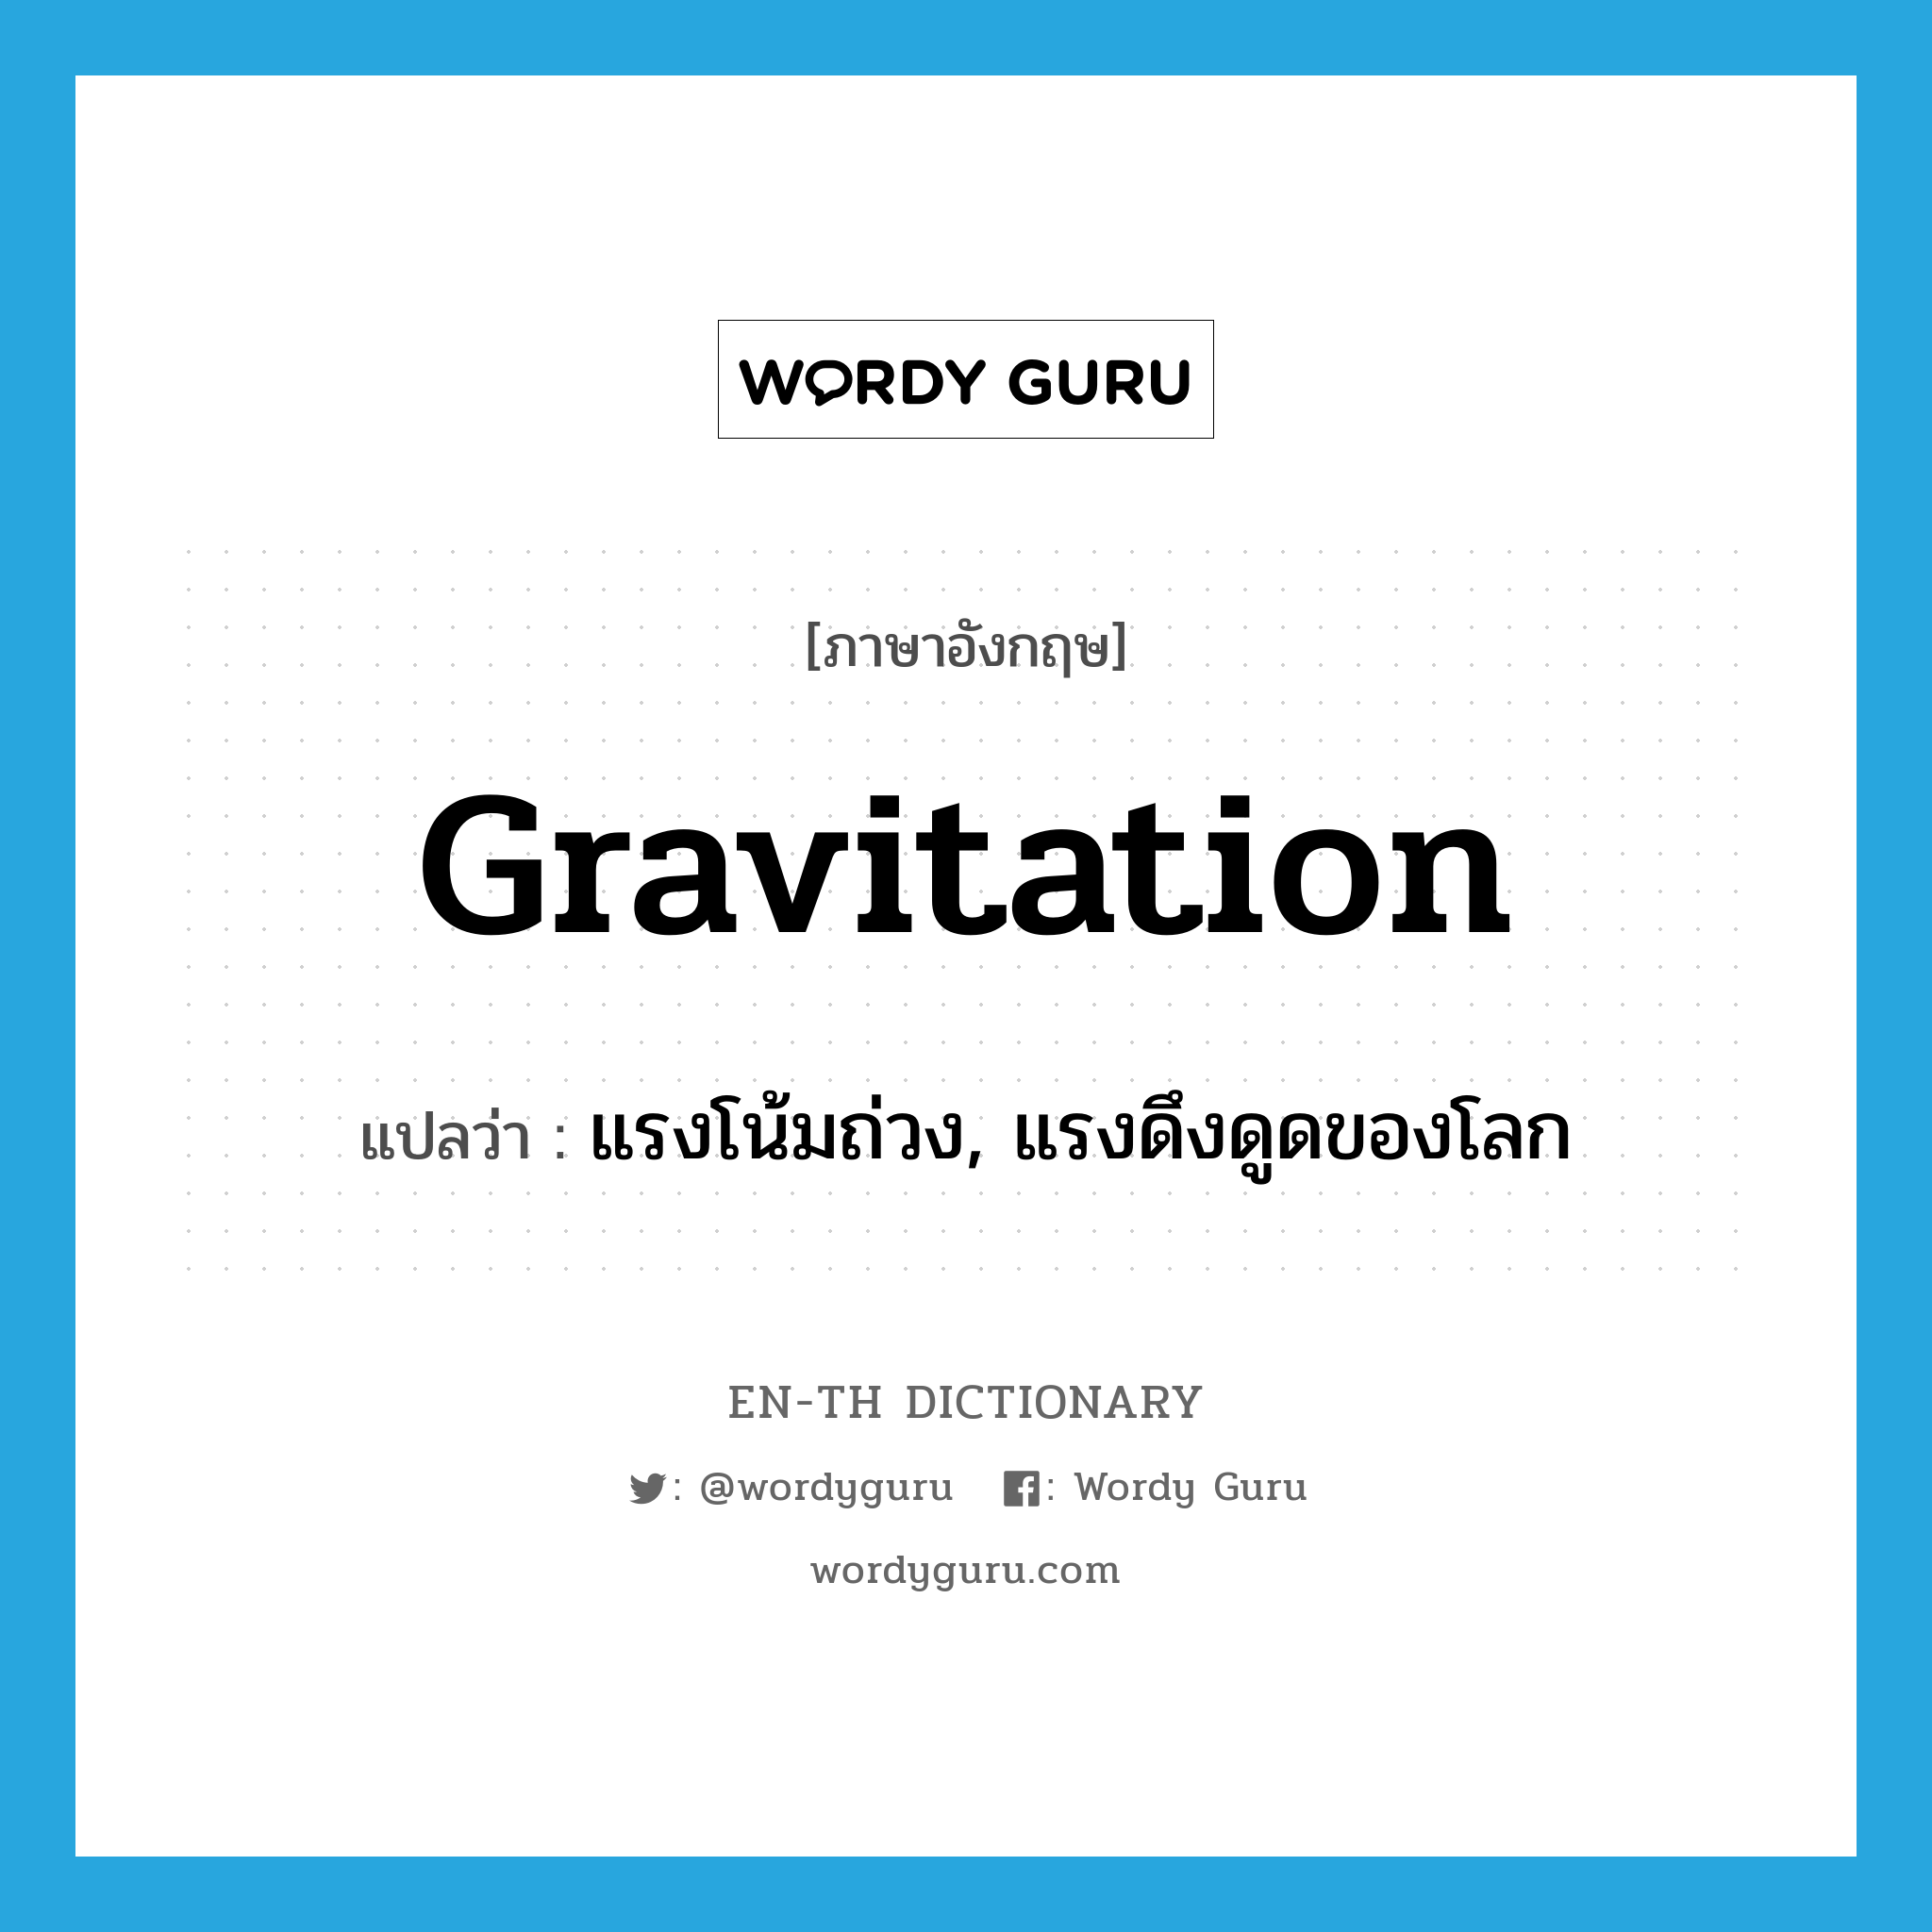 gravitation แปลว่า?, คำศัพท์ภาษาอังกฤษ gravitation แปลว่า แรงโน้มถ่วง, แรงดึงดูดของโลก ประเภท N หมวด N